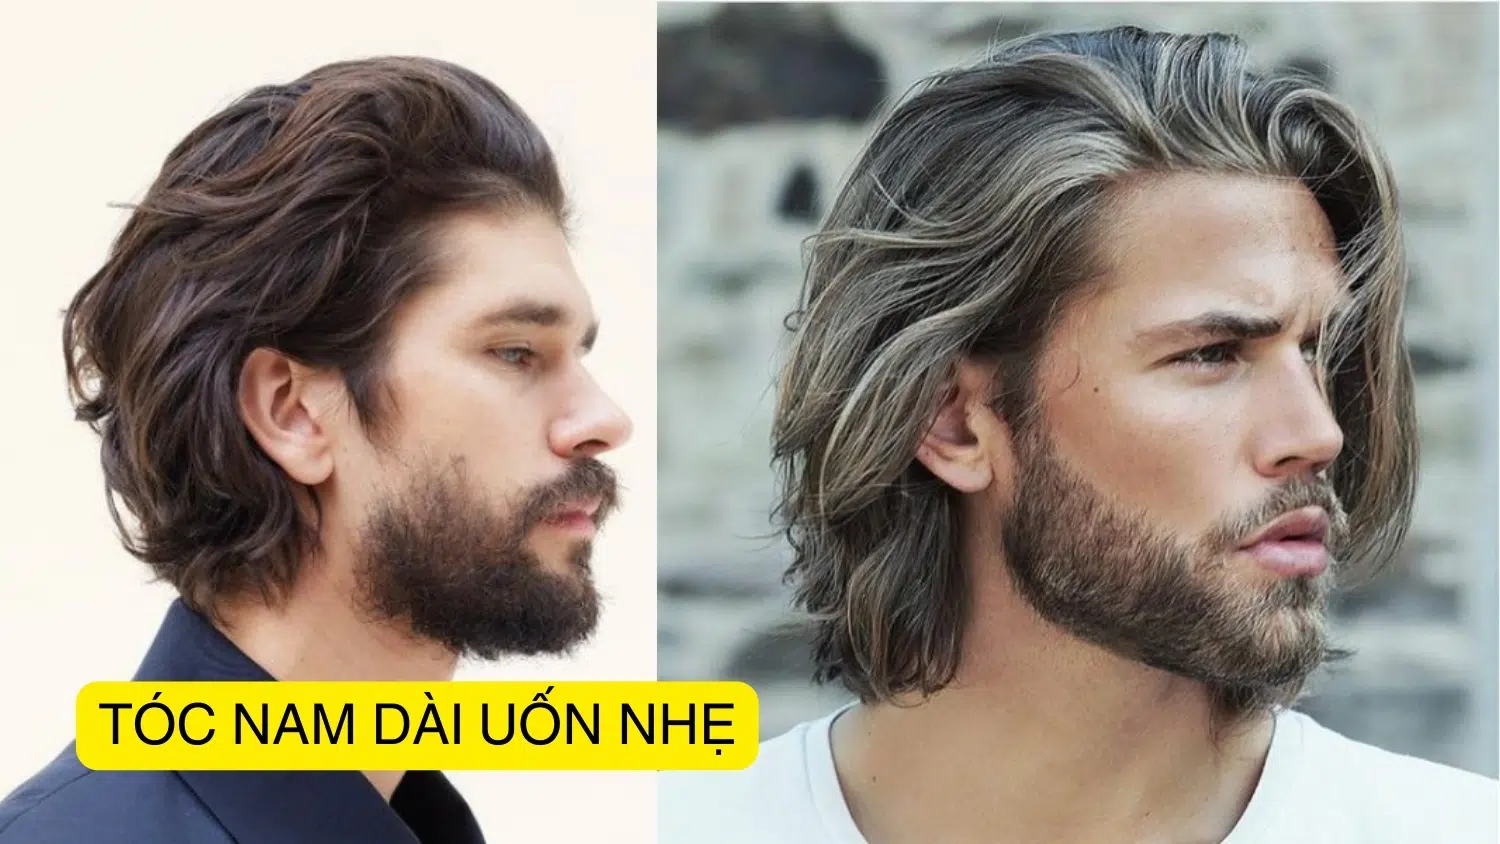 Những kiểu tóc dài vô cùng phong cách và ấn tượng dành cho nam giới nă